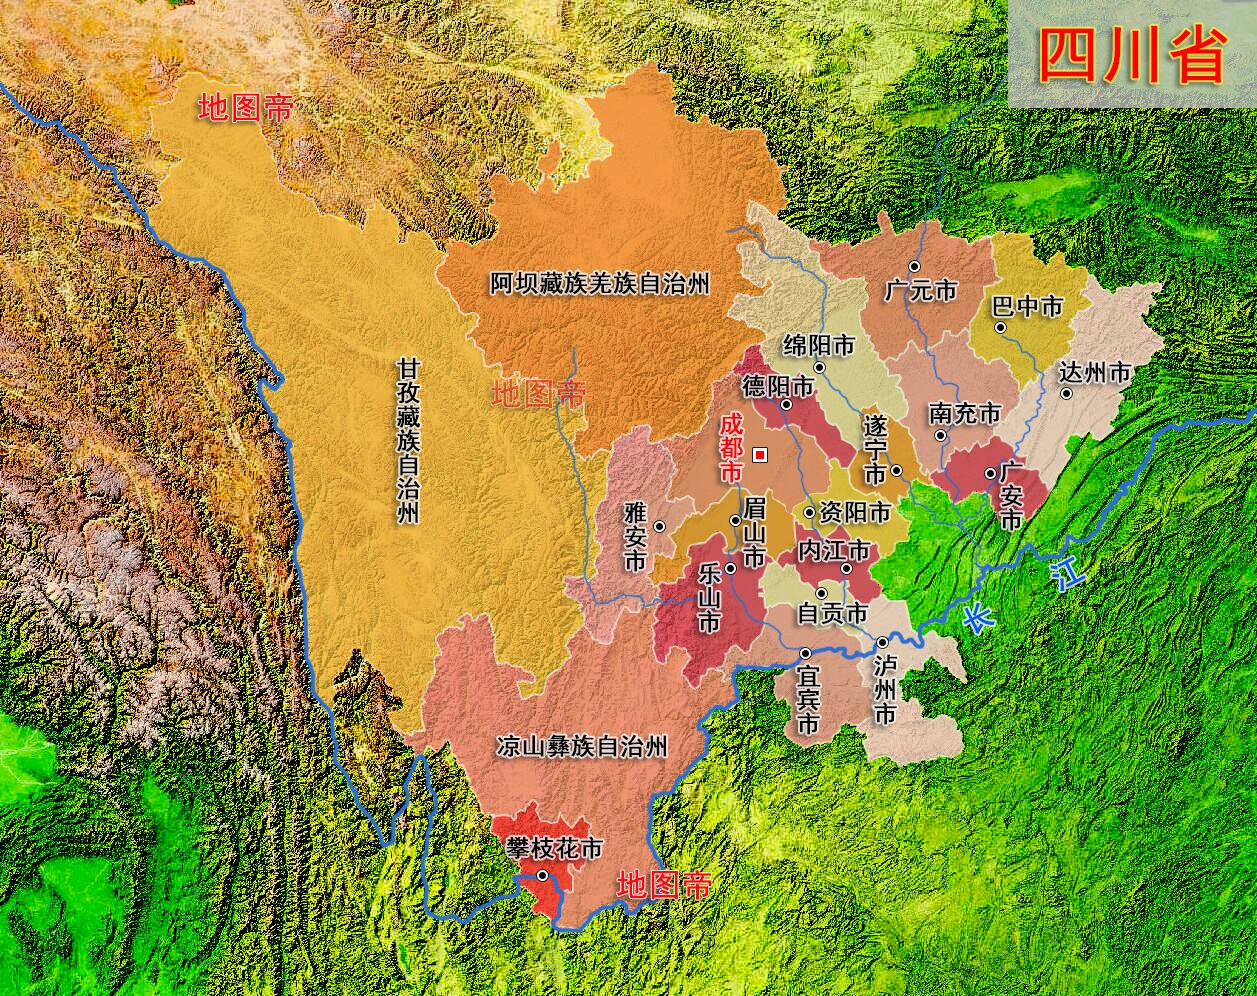 原创战国时期的四川盆地是什么诸侯